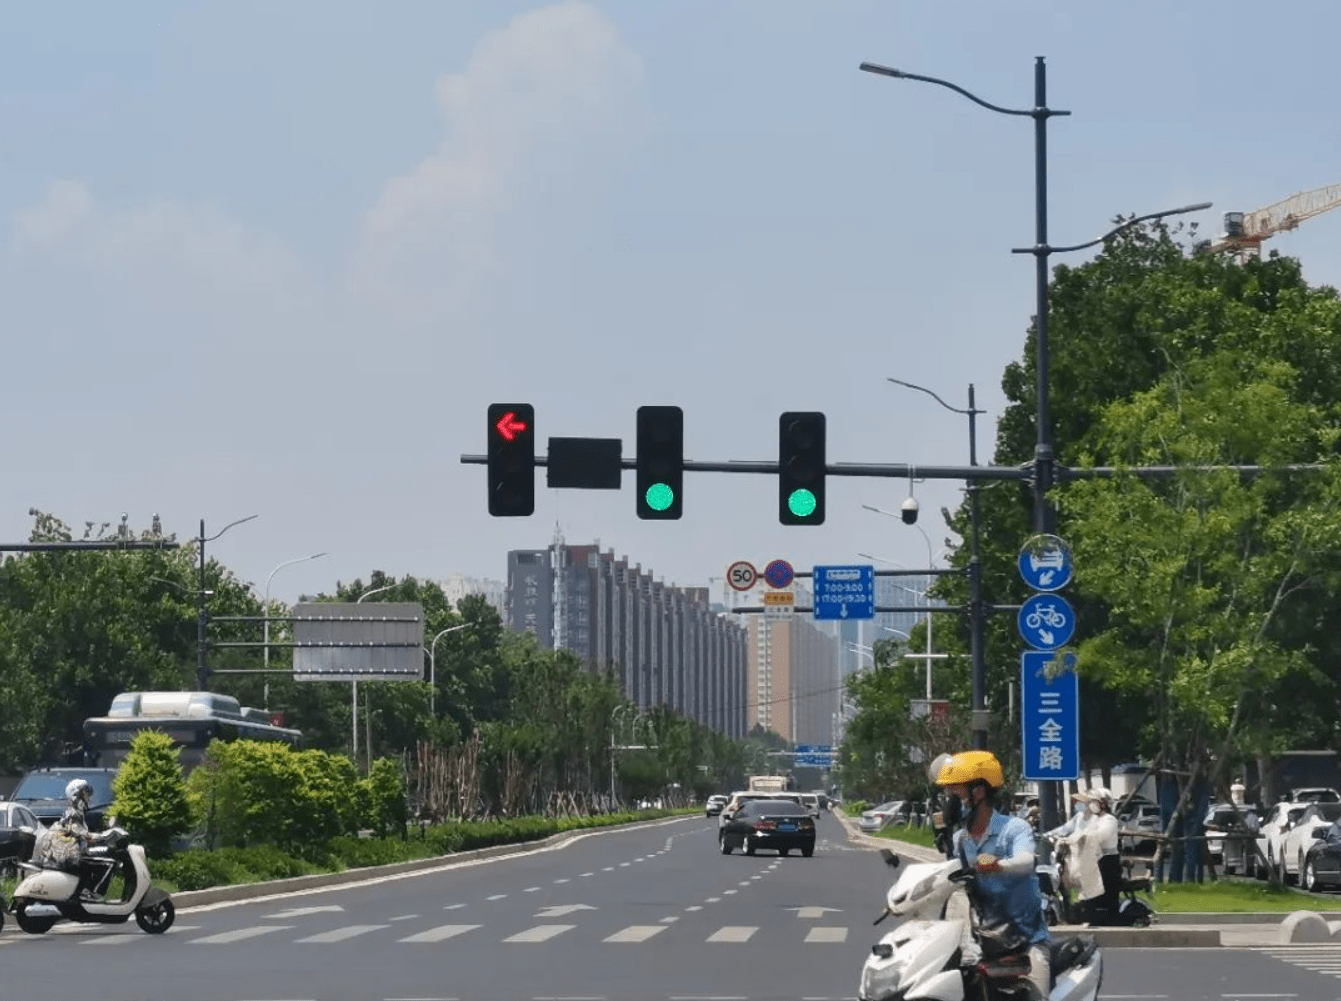 近日,有些郑州市民在人行横道前等待过马路时,发现红绿灯柱子上设立了